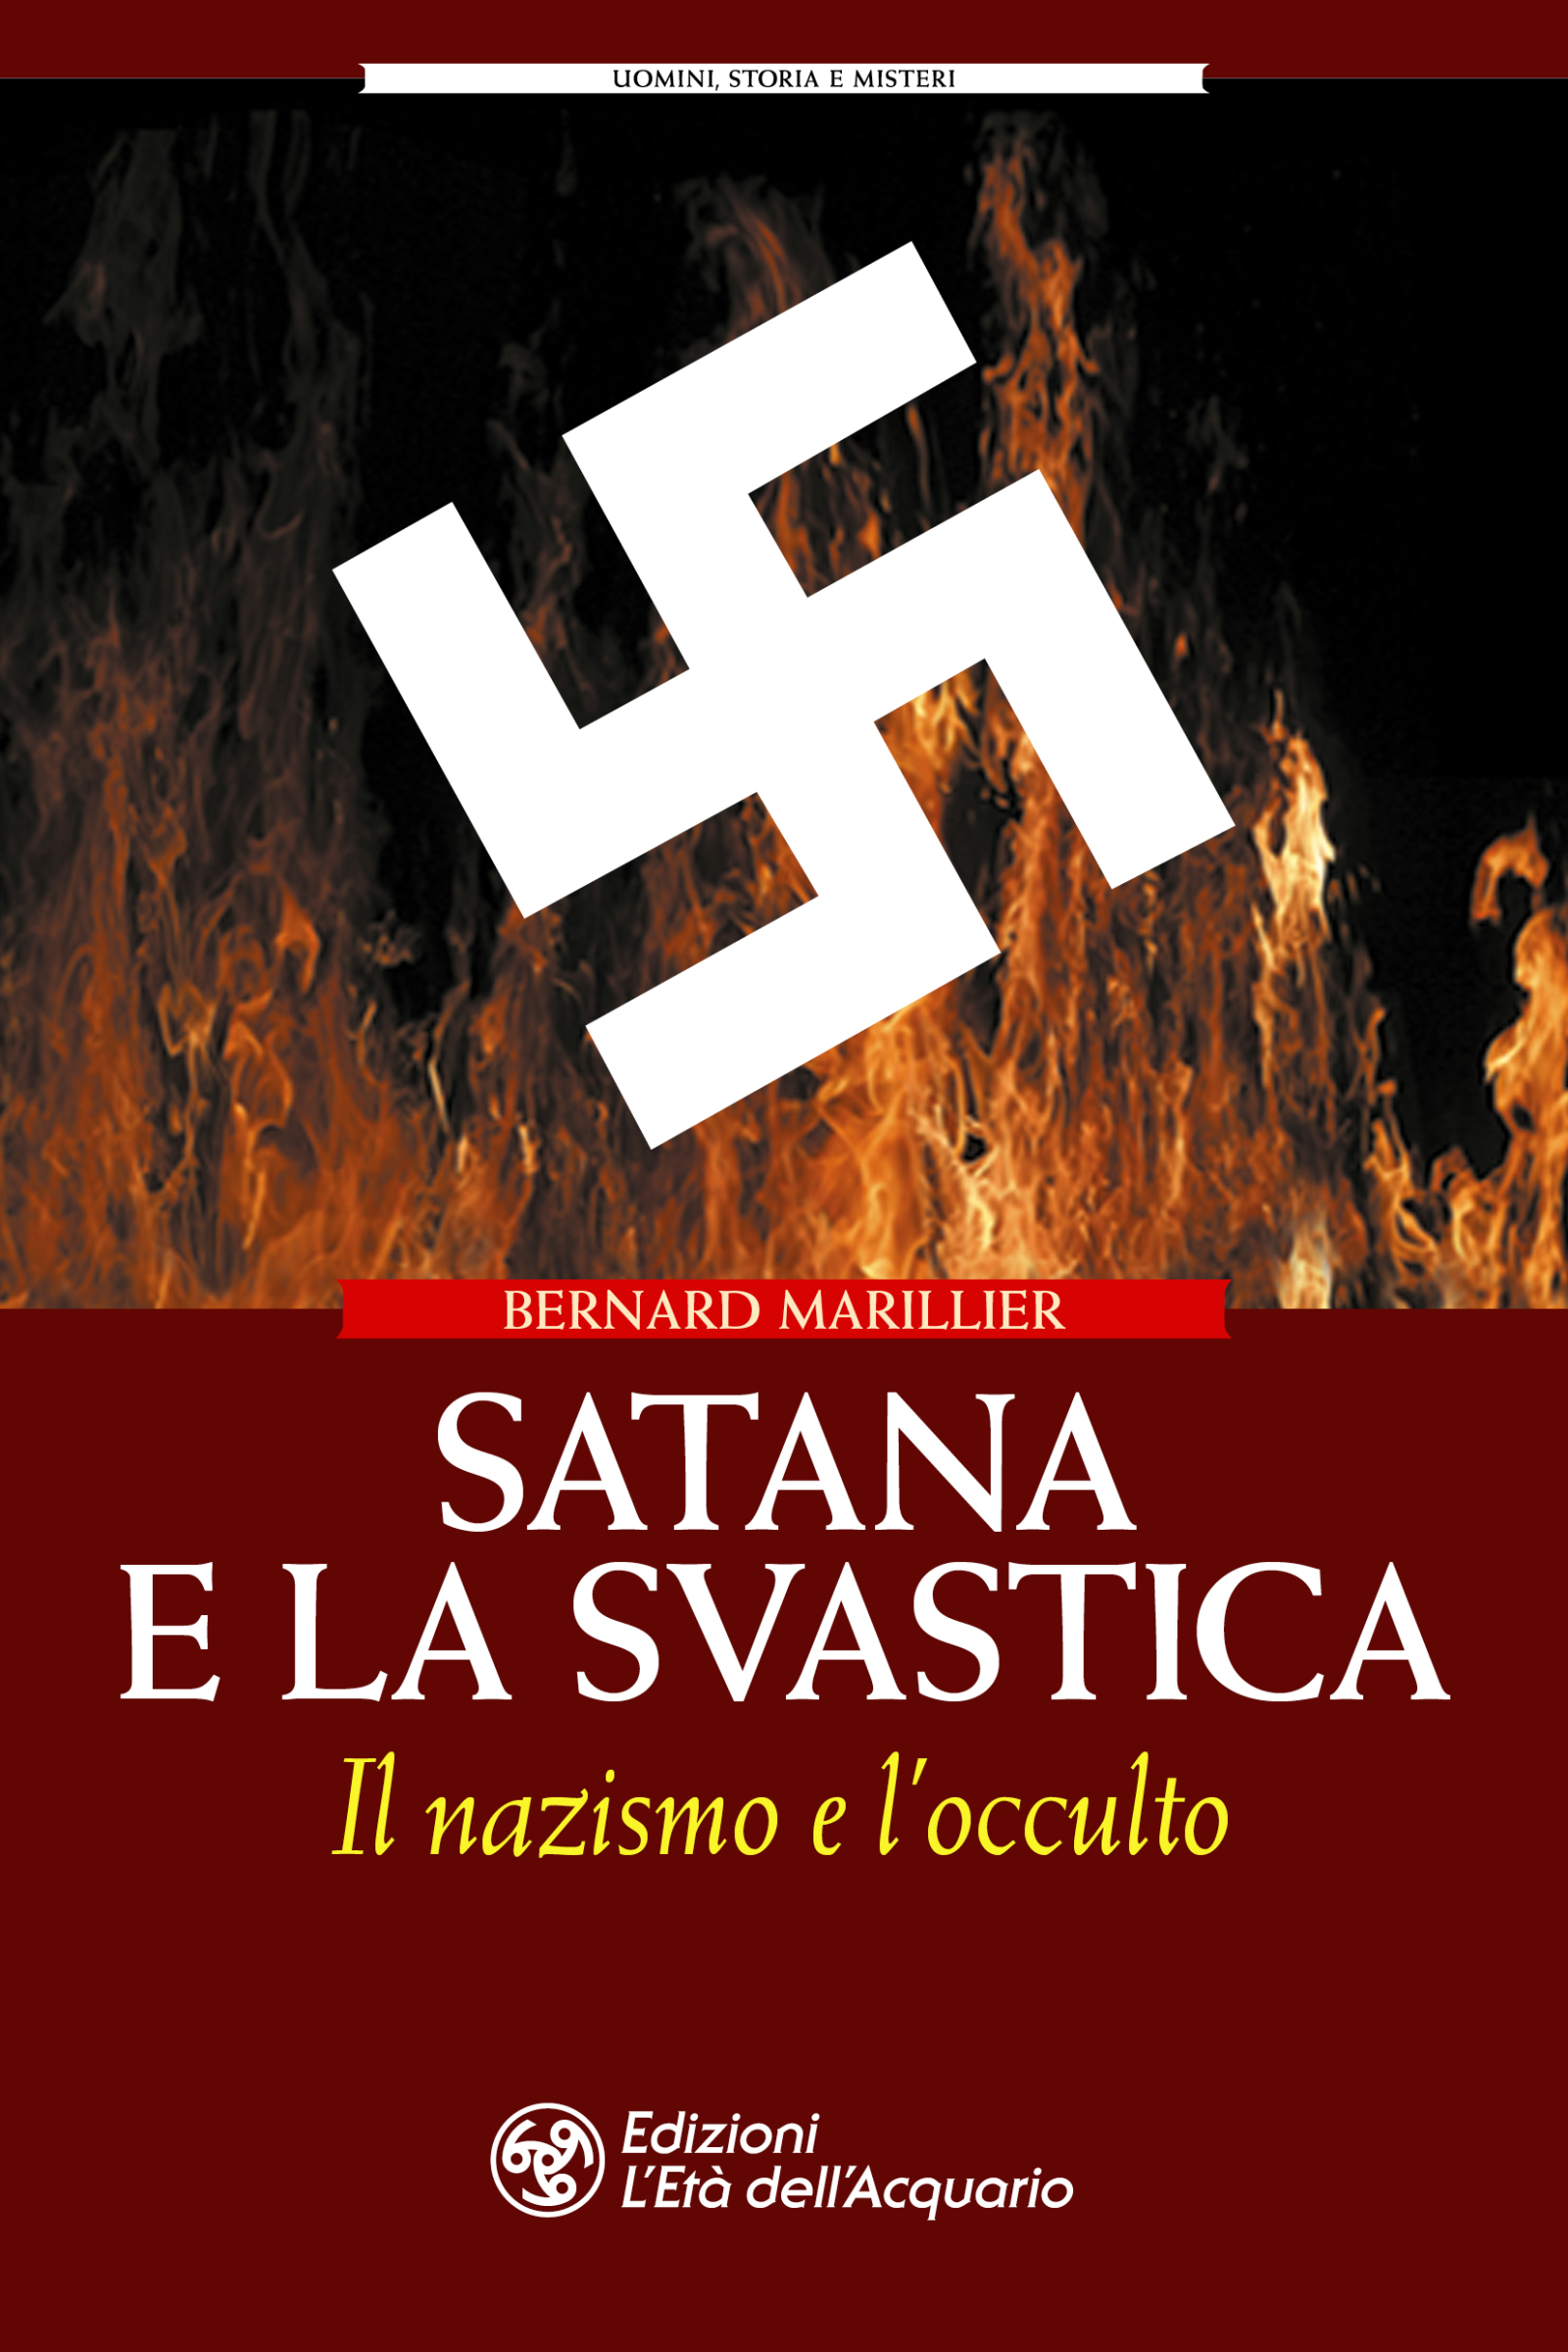 Libri Francis King - Satana E La Svastica. Il Nazismo E L'occulto NUOVO SIGILLATO, EDIZIONE DEL 14/11/2019 SUBITO DISPONIBILE